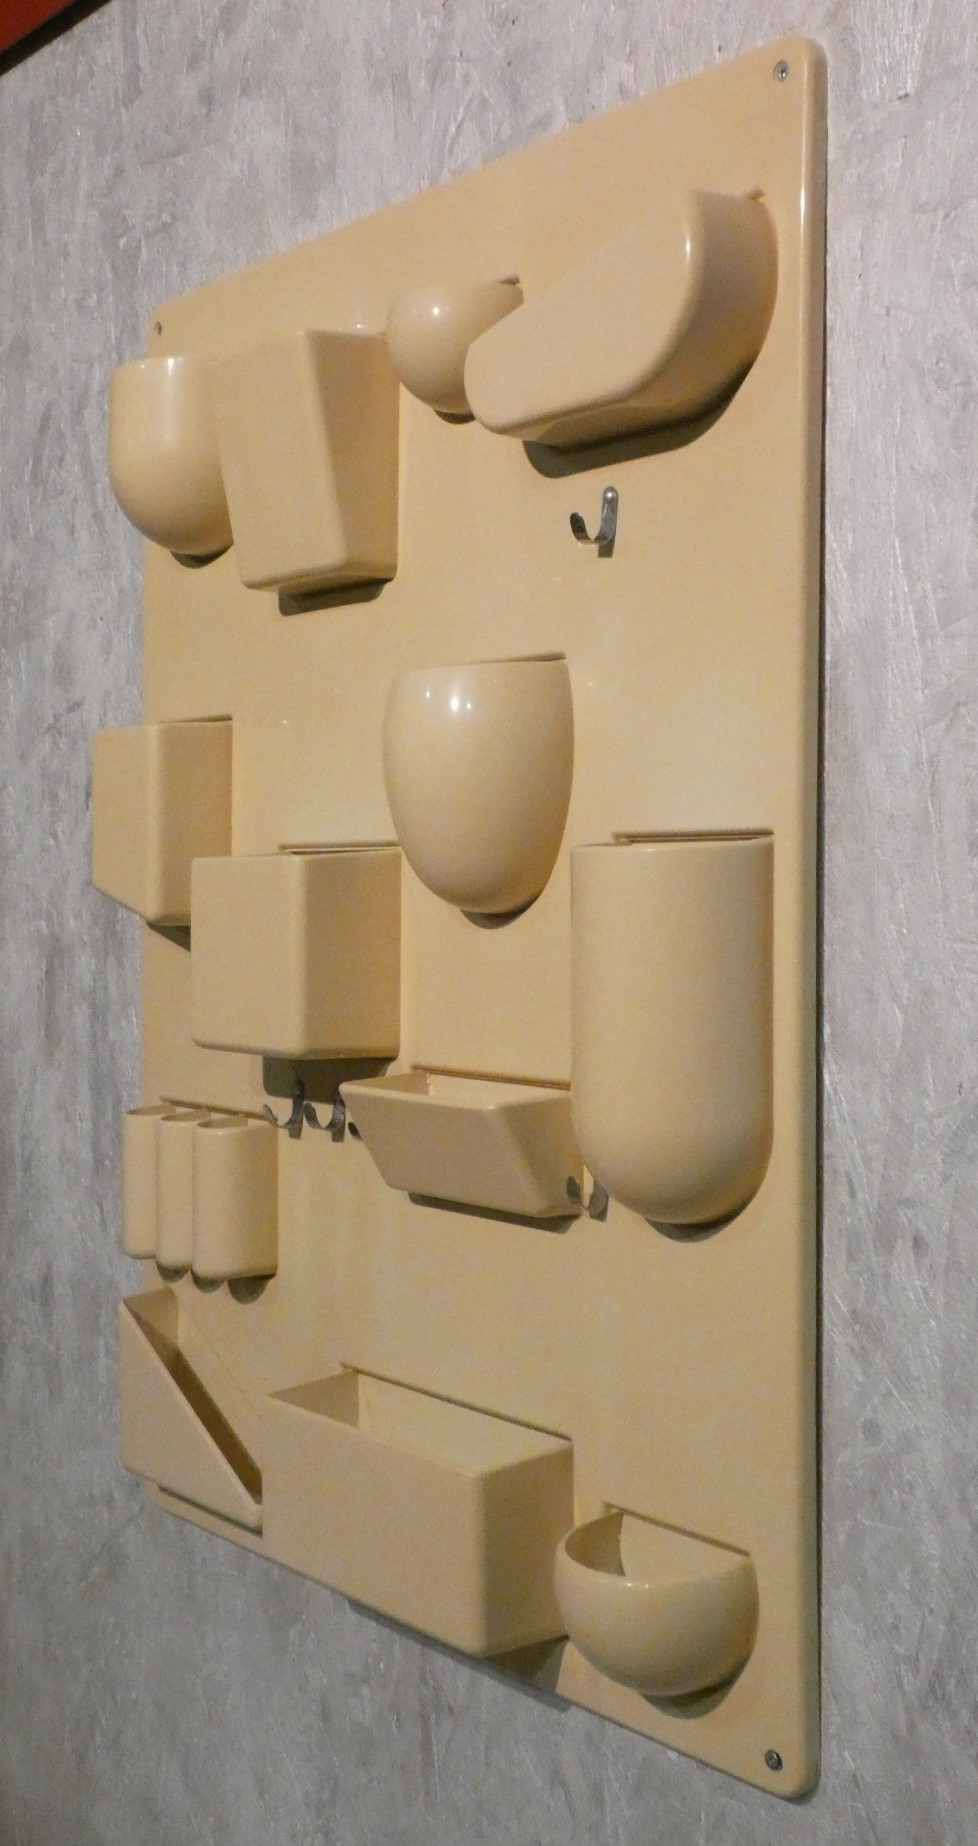 Portaoggetti da Parete Uten.Silo di Dorothee Maurer per Design M, Monaco  1969 – Amarcord Officina di Ricerca – Modena – Italy